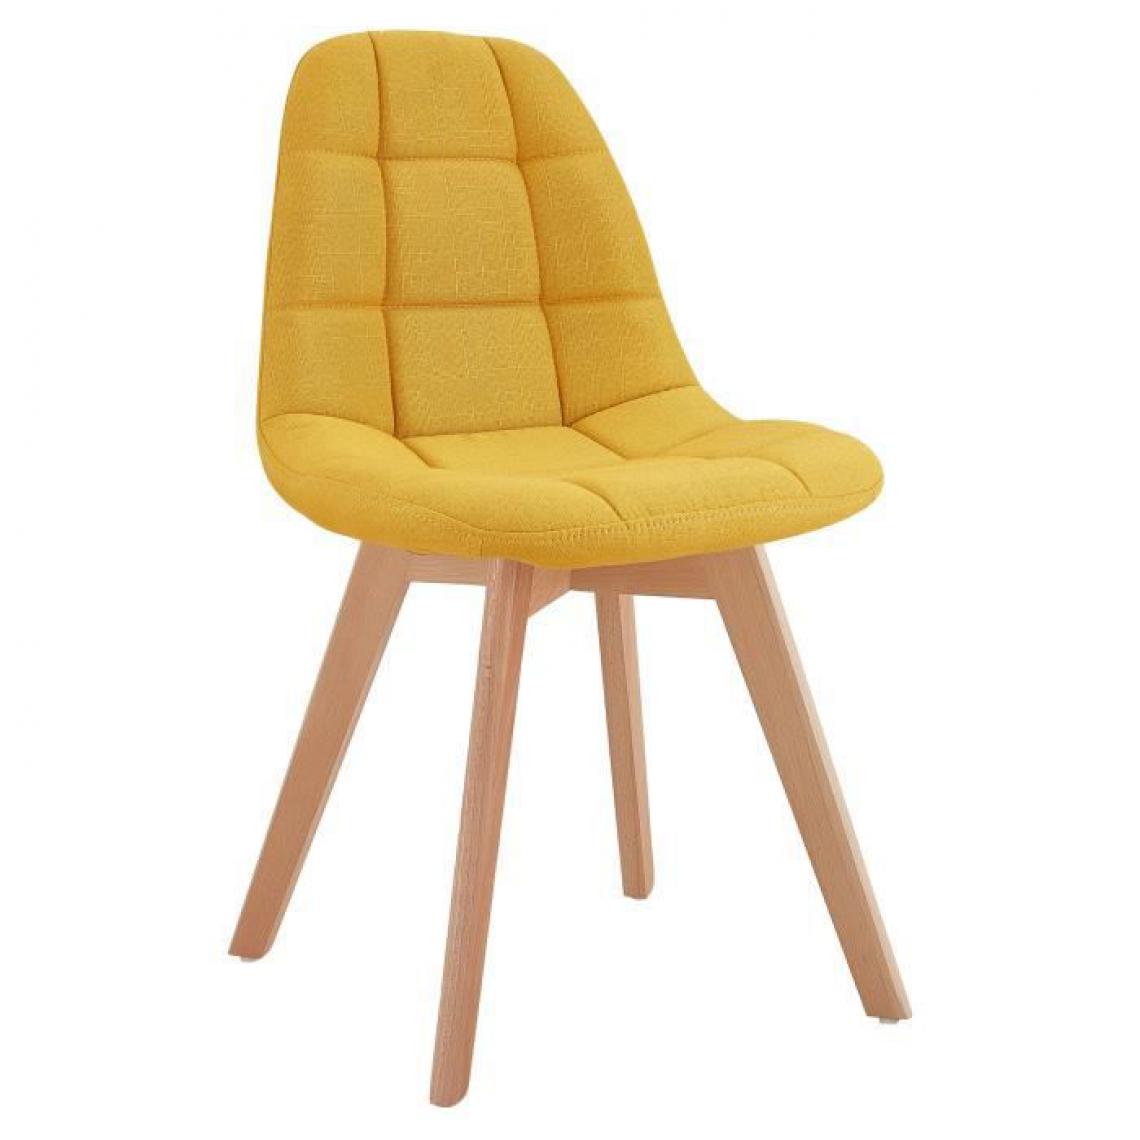 Icaverne - CHAISE ANYA Lot de 2 chaises de salle a manger - Style scandinave - Tissu Jaune curry - L 44 x P 50 x H 84 cm - Chaises